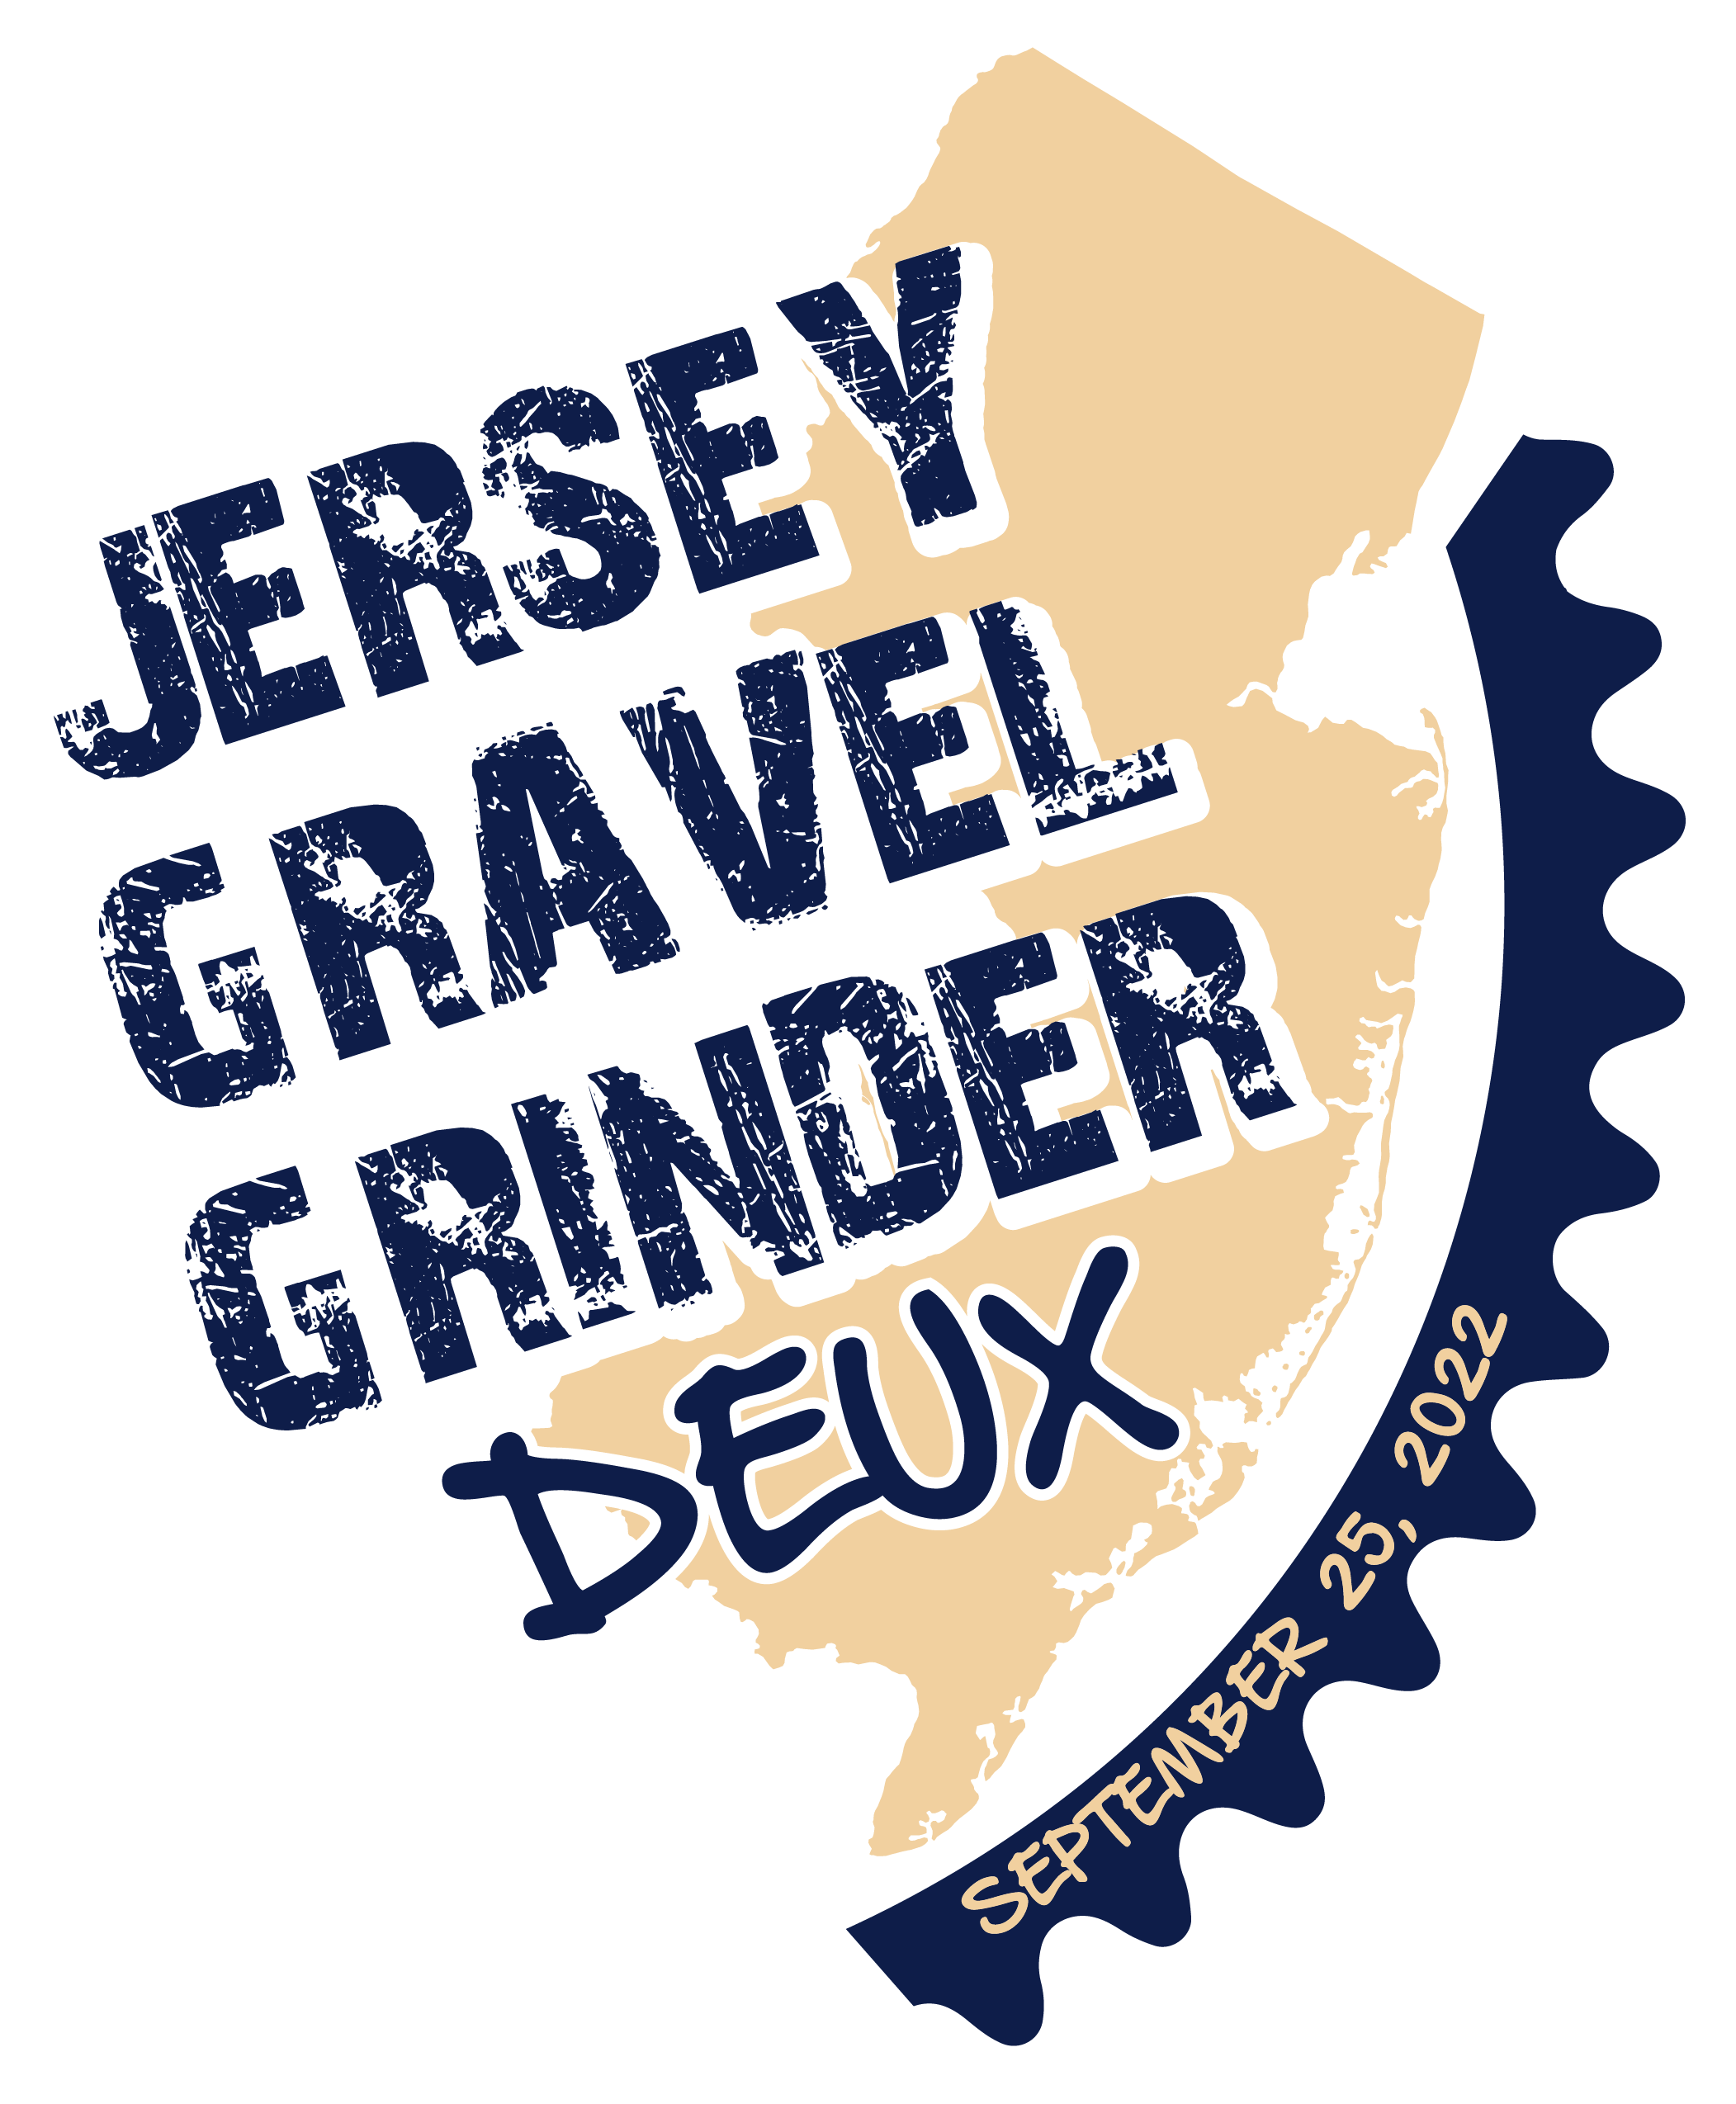 Jersey Gravel Grinder Deux logo yellow and dark blue